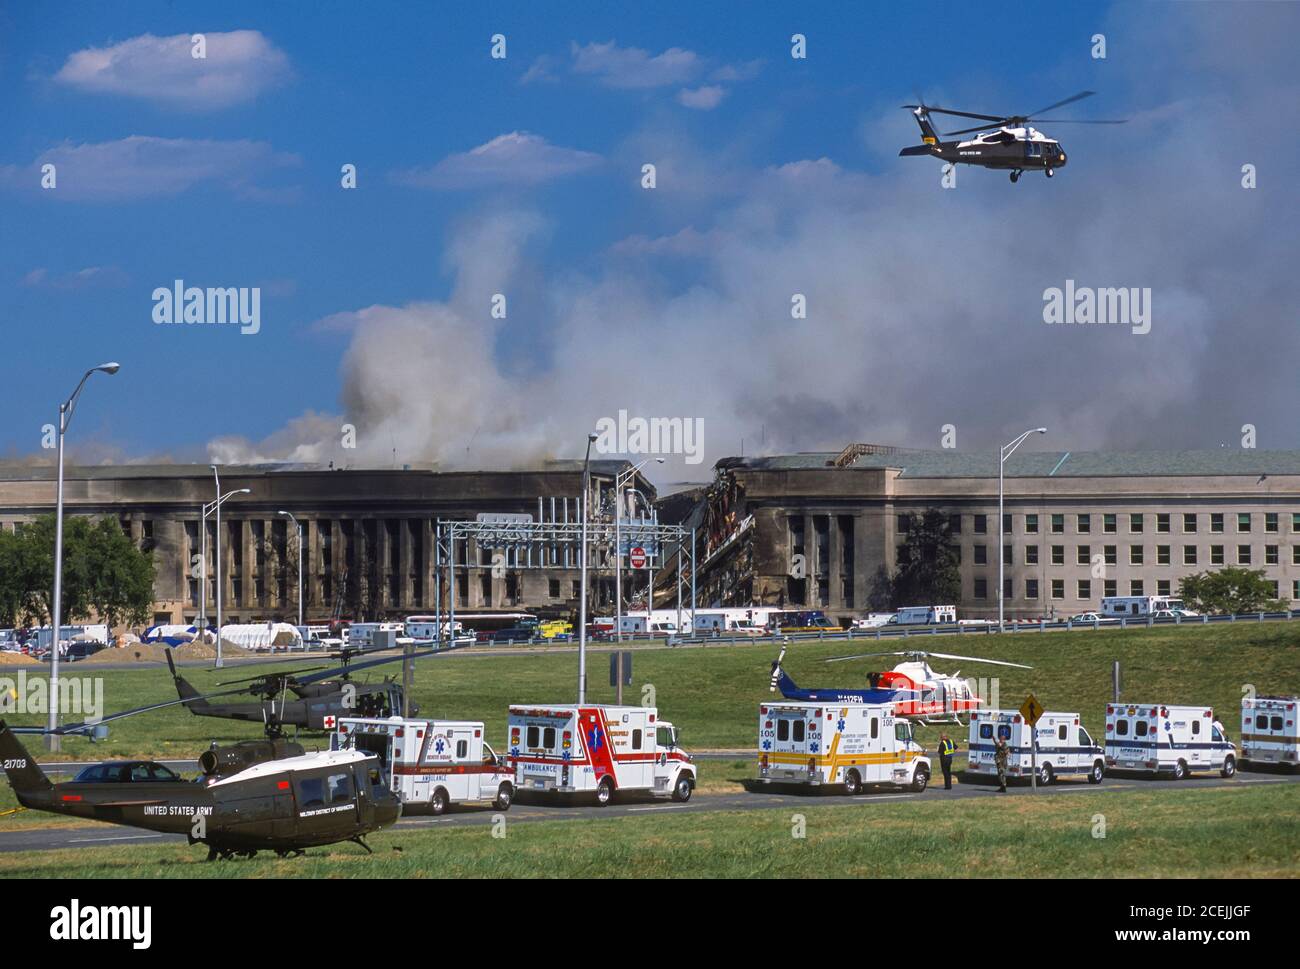 ARLINGTON, VIRGINIA, USA, 11. SEPTEMBER 2001 - Pentagon West Side Schaden von entführten 757 Jetliner Terrorcrash. Hubschrauber über Kopf. Stockfoto